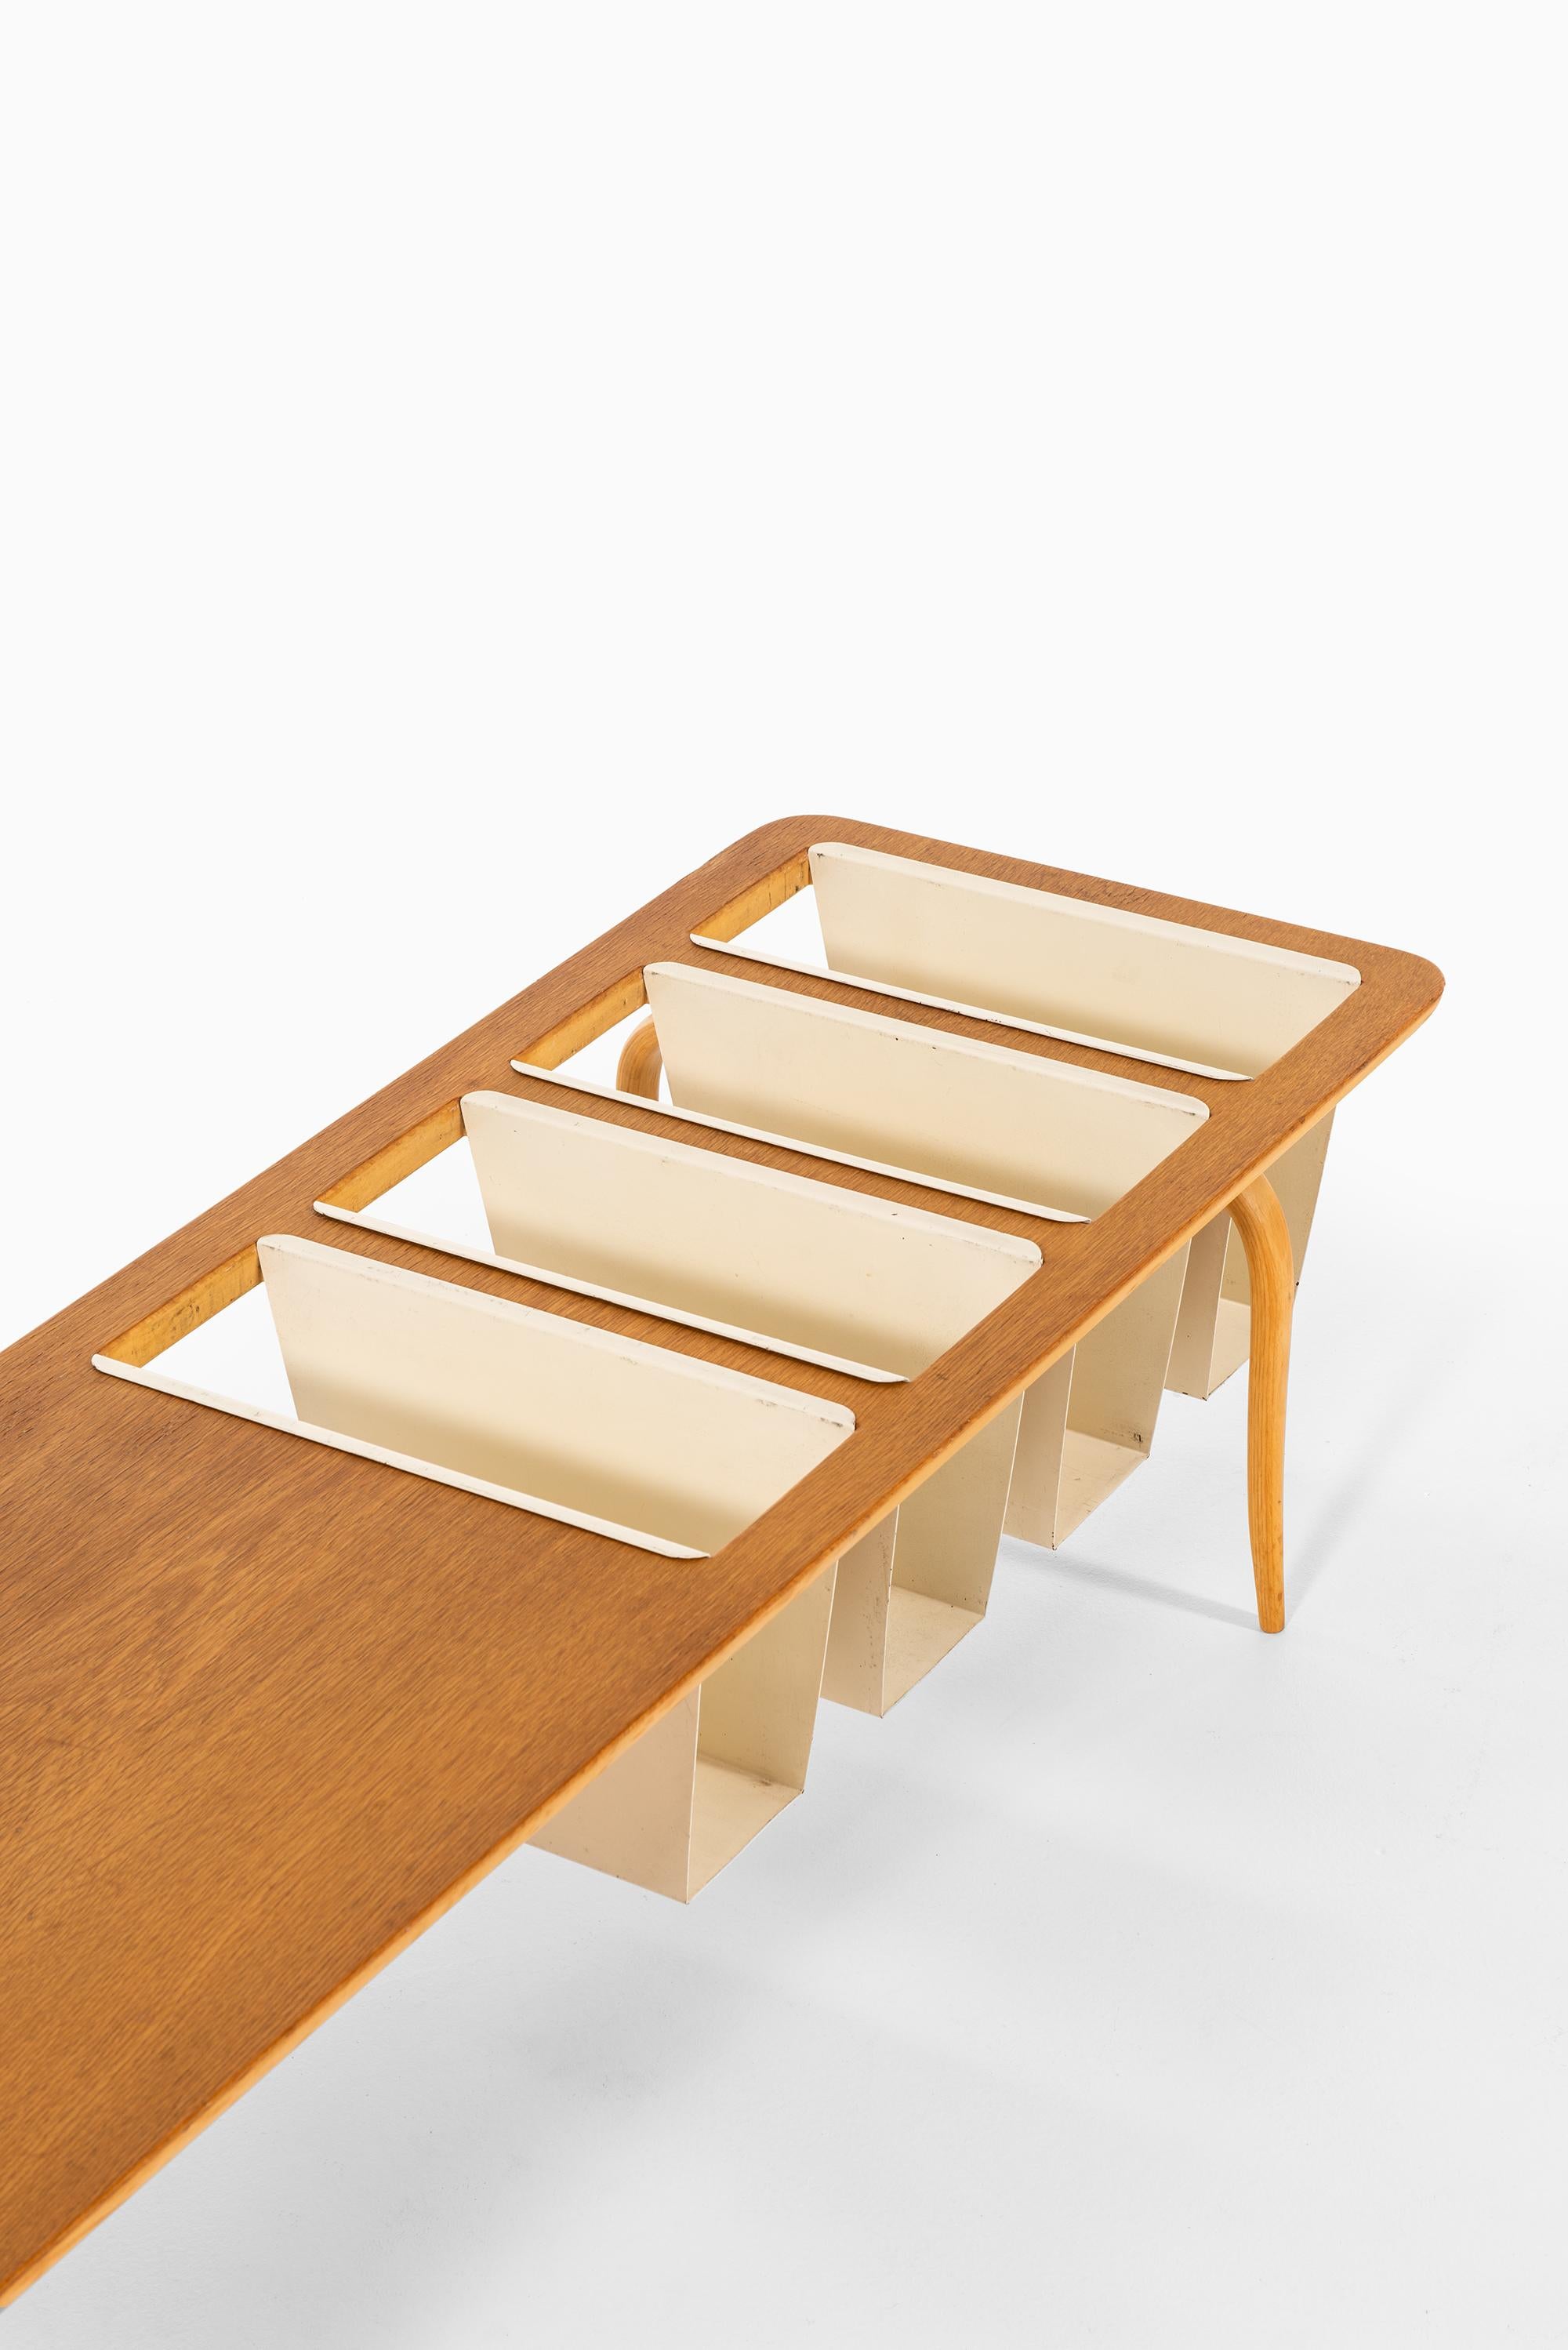 Seltener Beistell-/Magazintisch, entworfen von Bruno Mathsson. Produziert von Karl Mathsson in Värnamo, Schweden.